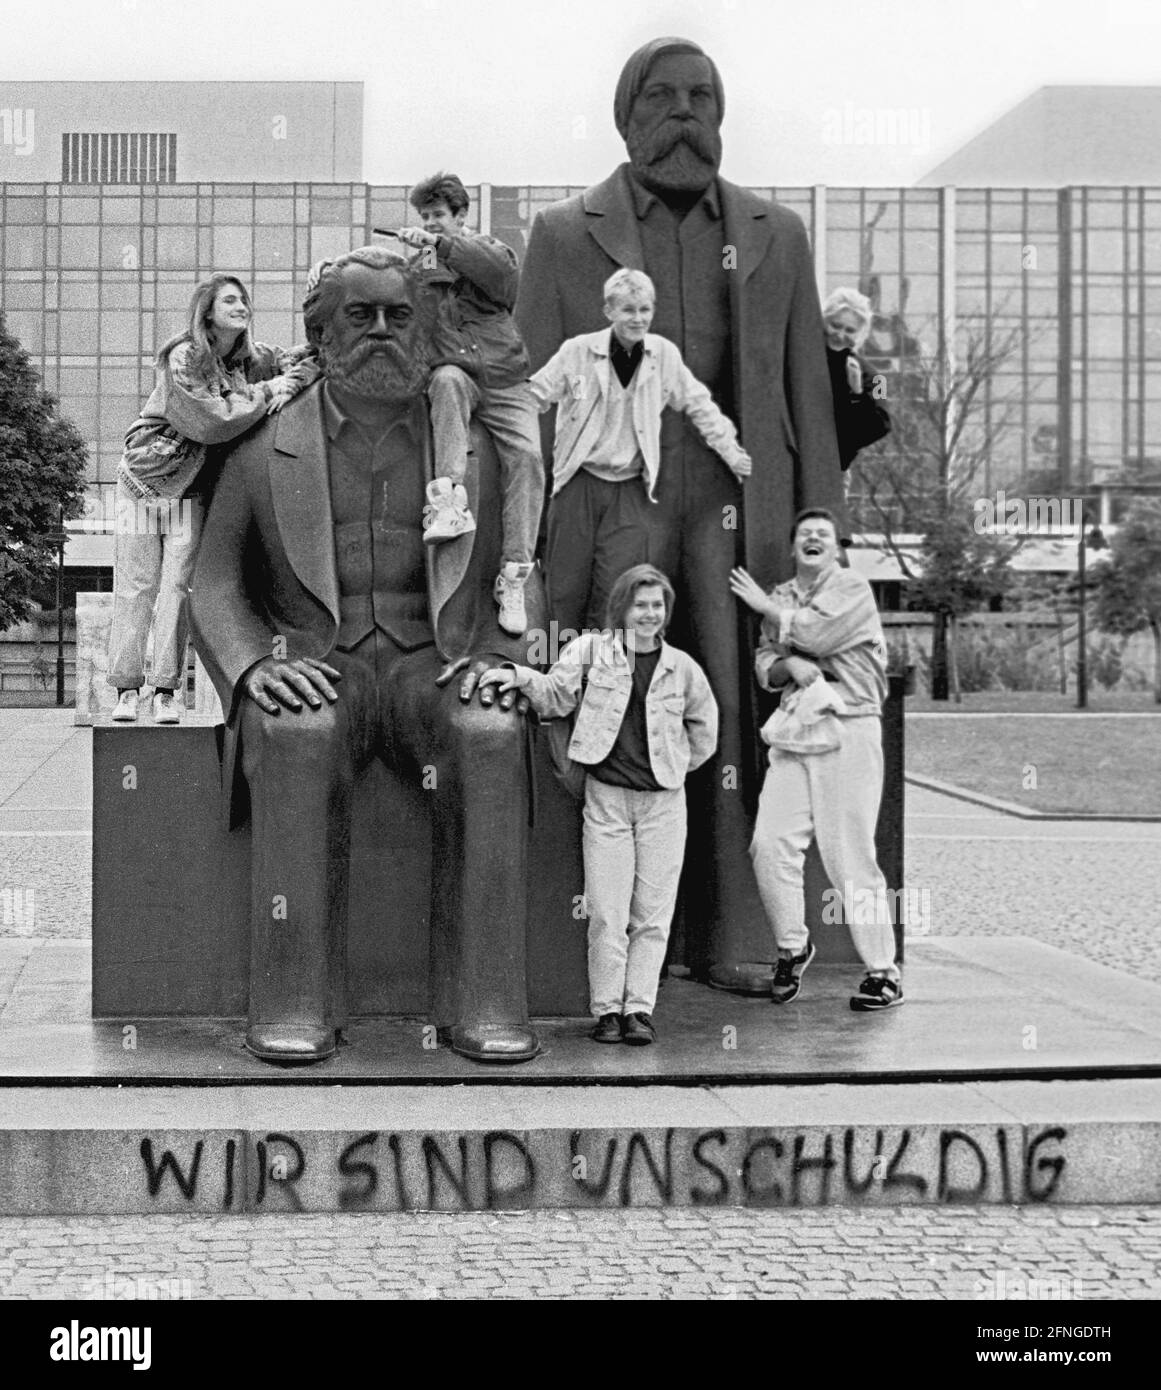 Berlino / Storia Monumenti / 1990 Alexanderplatz: Monumento a Karl Marx e Friedrich Engels, padri del socialismo. Qualcuno ha scritto sul piedistallo: -siamo innocenti- (della caduta del socialismo). Scultore Ludwig Engelhardt. // GDR / simbolo / Storia / Socialismo / Comunismo / Marxismo / democrazia sociale / Stato della RDT / Politica / *** Città *** Germania Est / Comunismo / Monumento di Karl Marx e Friedrich Engels nel 1990. Alcuni hanno scritto: -non siamo colpevoli- (della caduta del socialismo) [traduzione automatizzata] Foto Stock